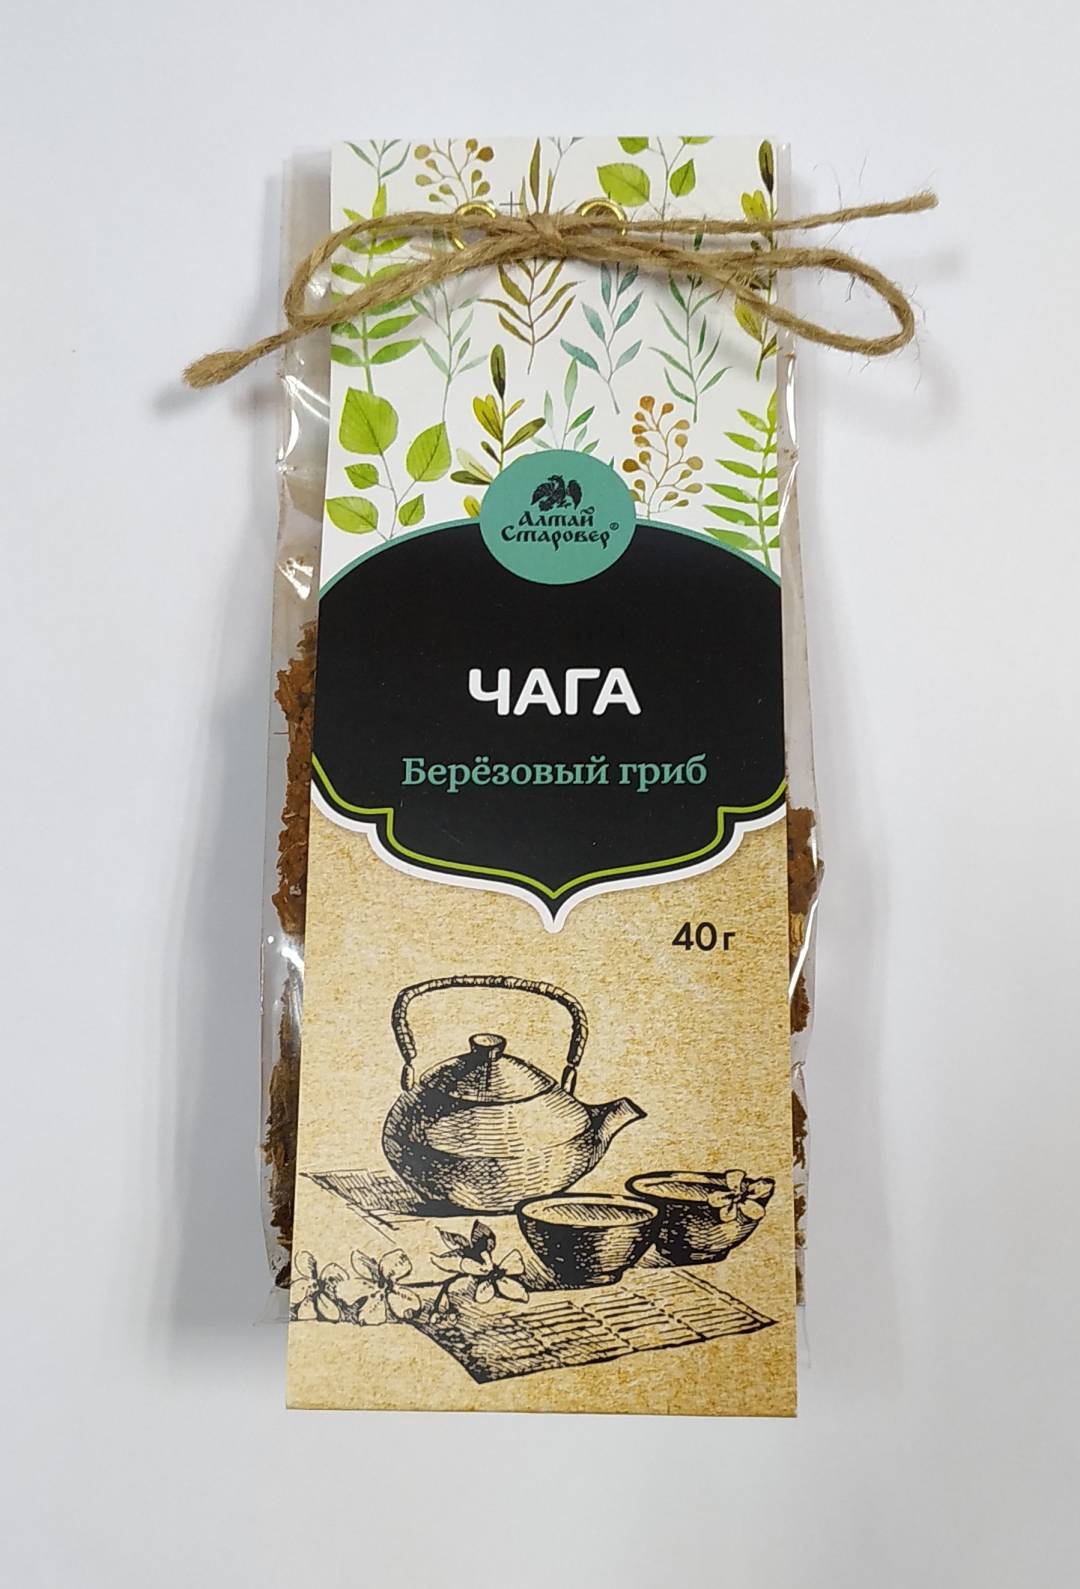 Купить онлайн Чай Чага, 40 г в интернет-магазине Беришка с доставкой по Хабаровску и по России недорого.